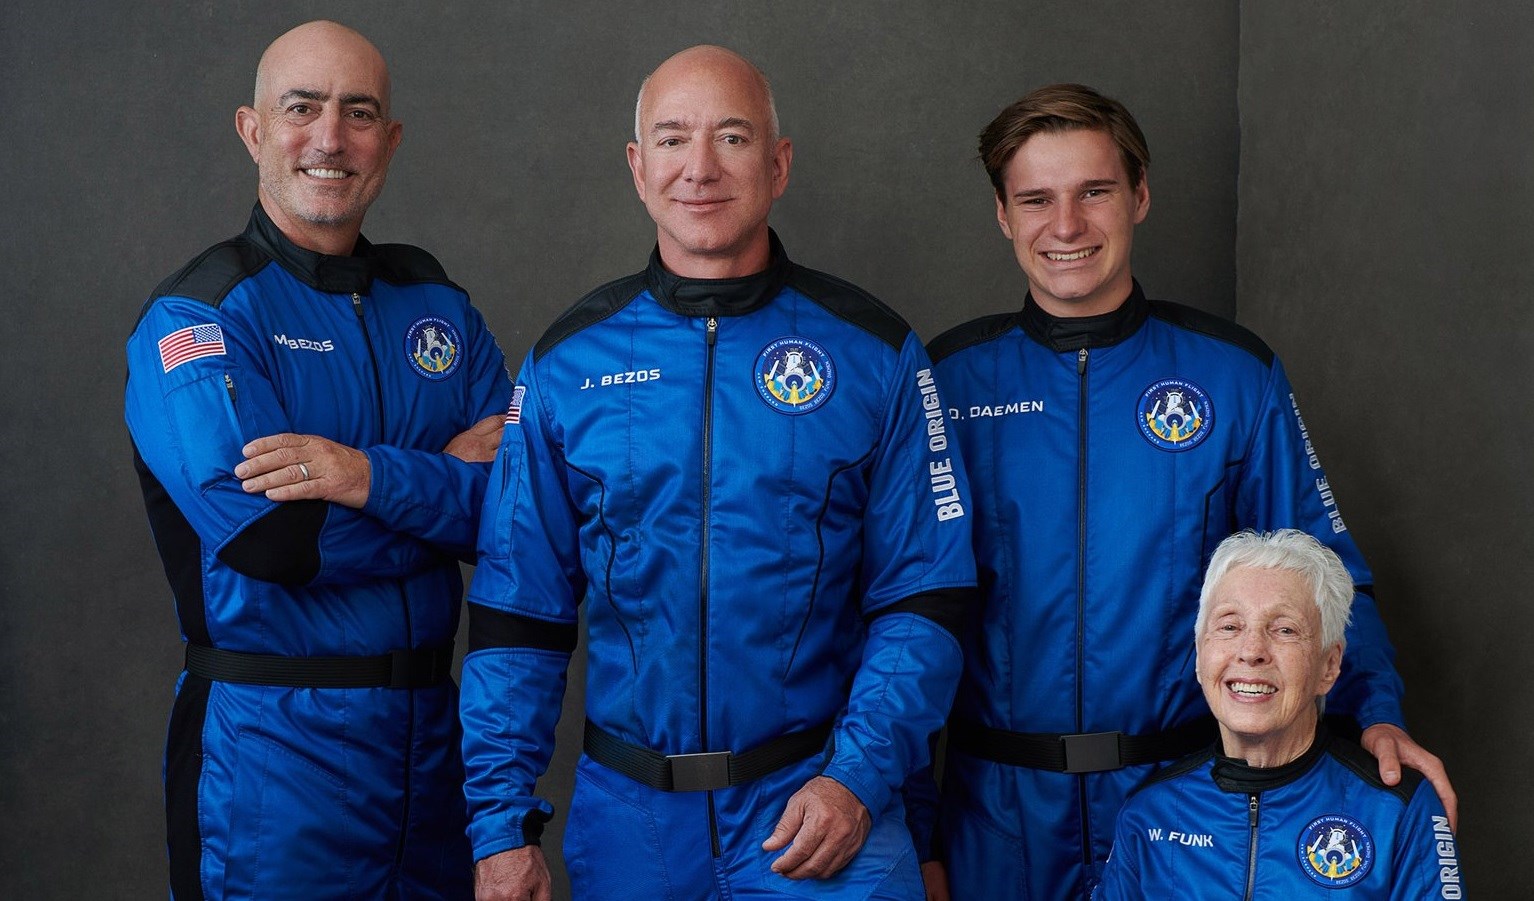 Αντίστροφη μέτρηση για την πτήση του Τζεφ Μπέζος στο διάστημα – Ο πύραυλος New Shepard και οι ευχές του Ίλον Μασκ